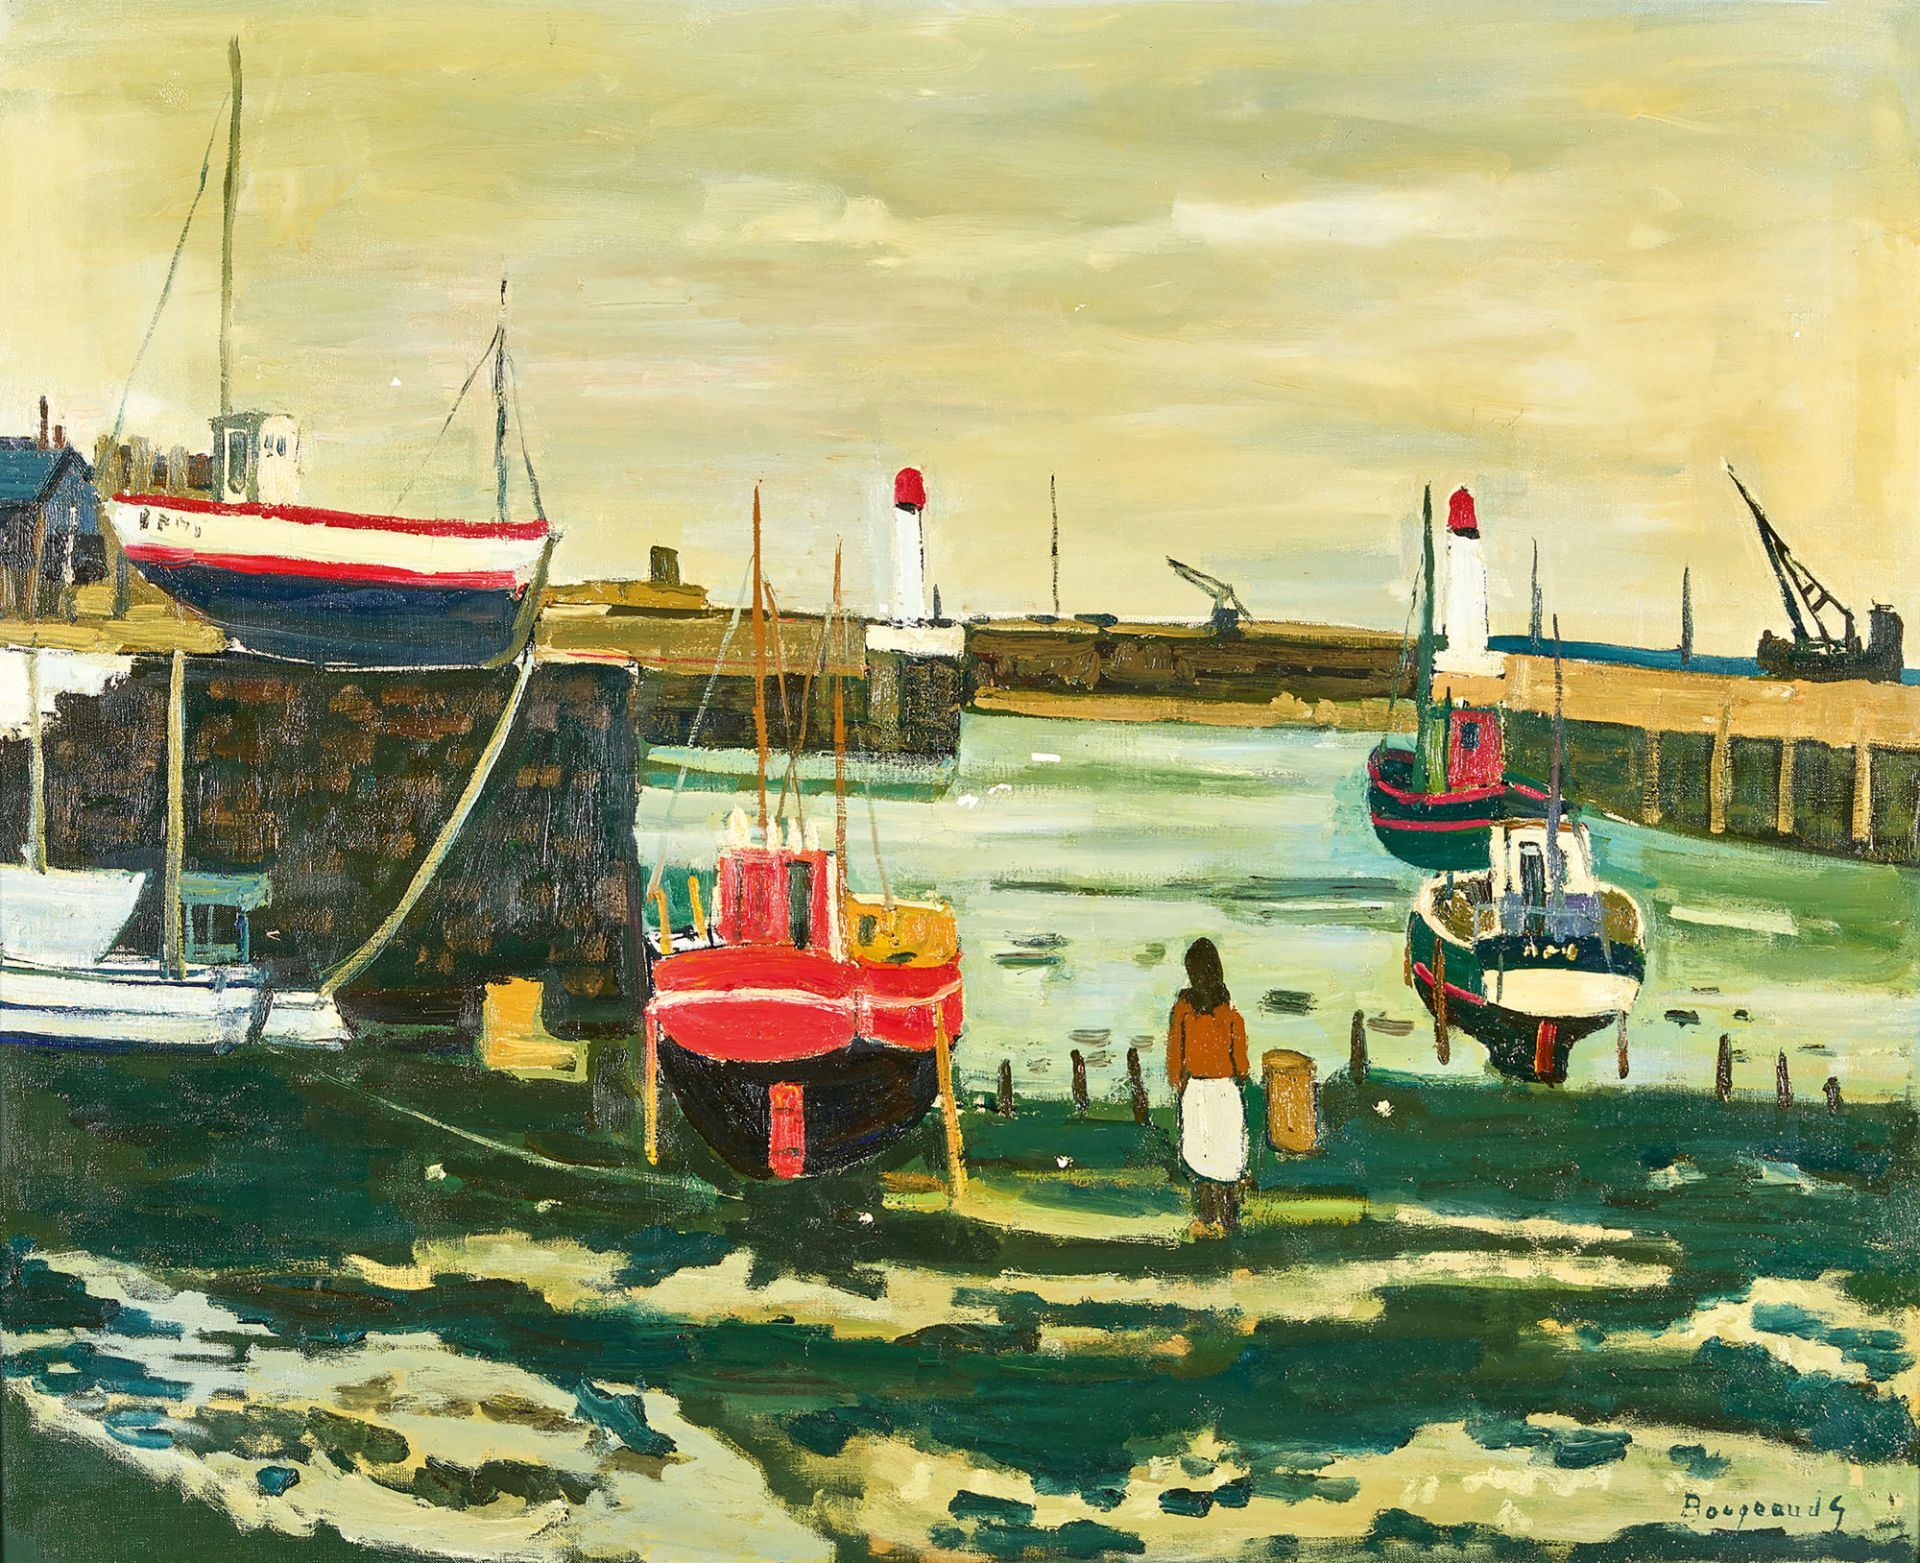 BORGEAUD, GEORGES: "Port de Guernsey".